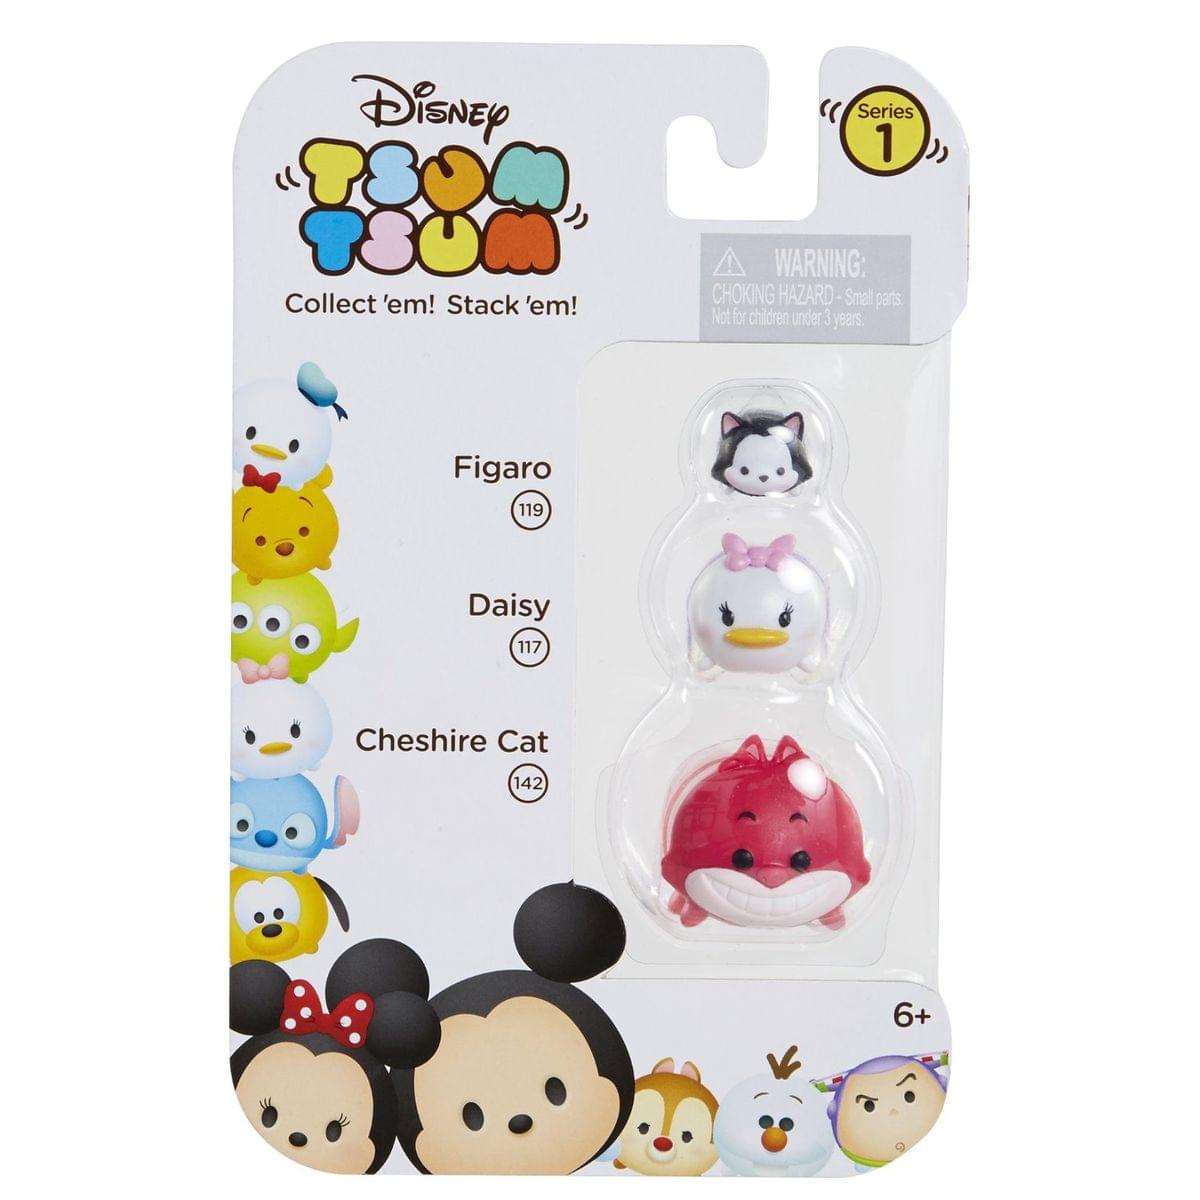 Disney Tsum Tsum 3 Pack: Figaro, Daisy, Cheshire